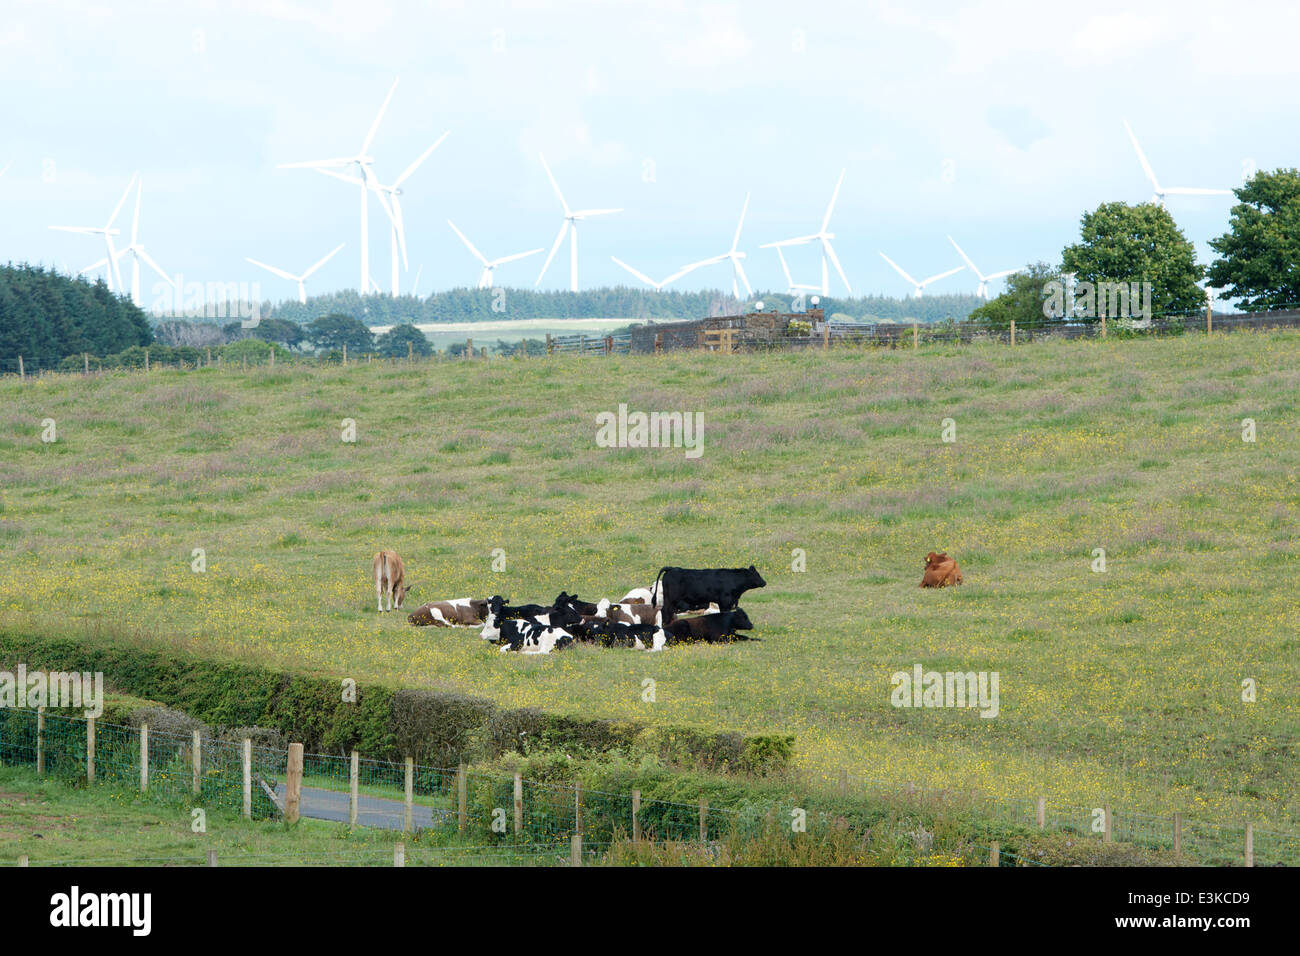 Milchkühe Rest in einem Feld mit den Turbinen Whitelee Windfarm in der Ferne. Stockfoto